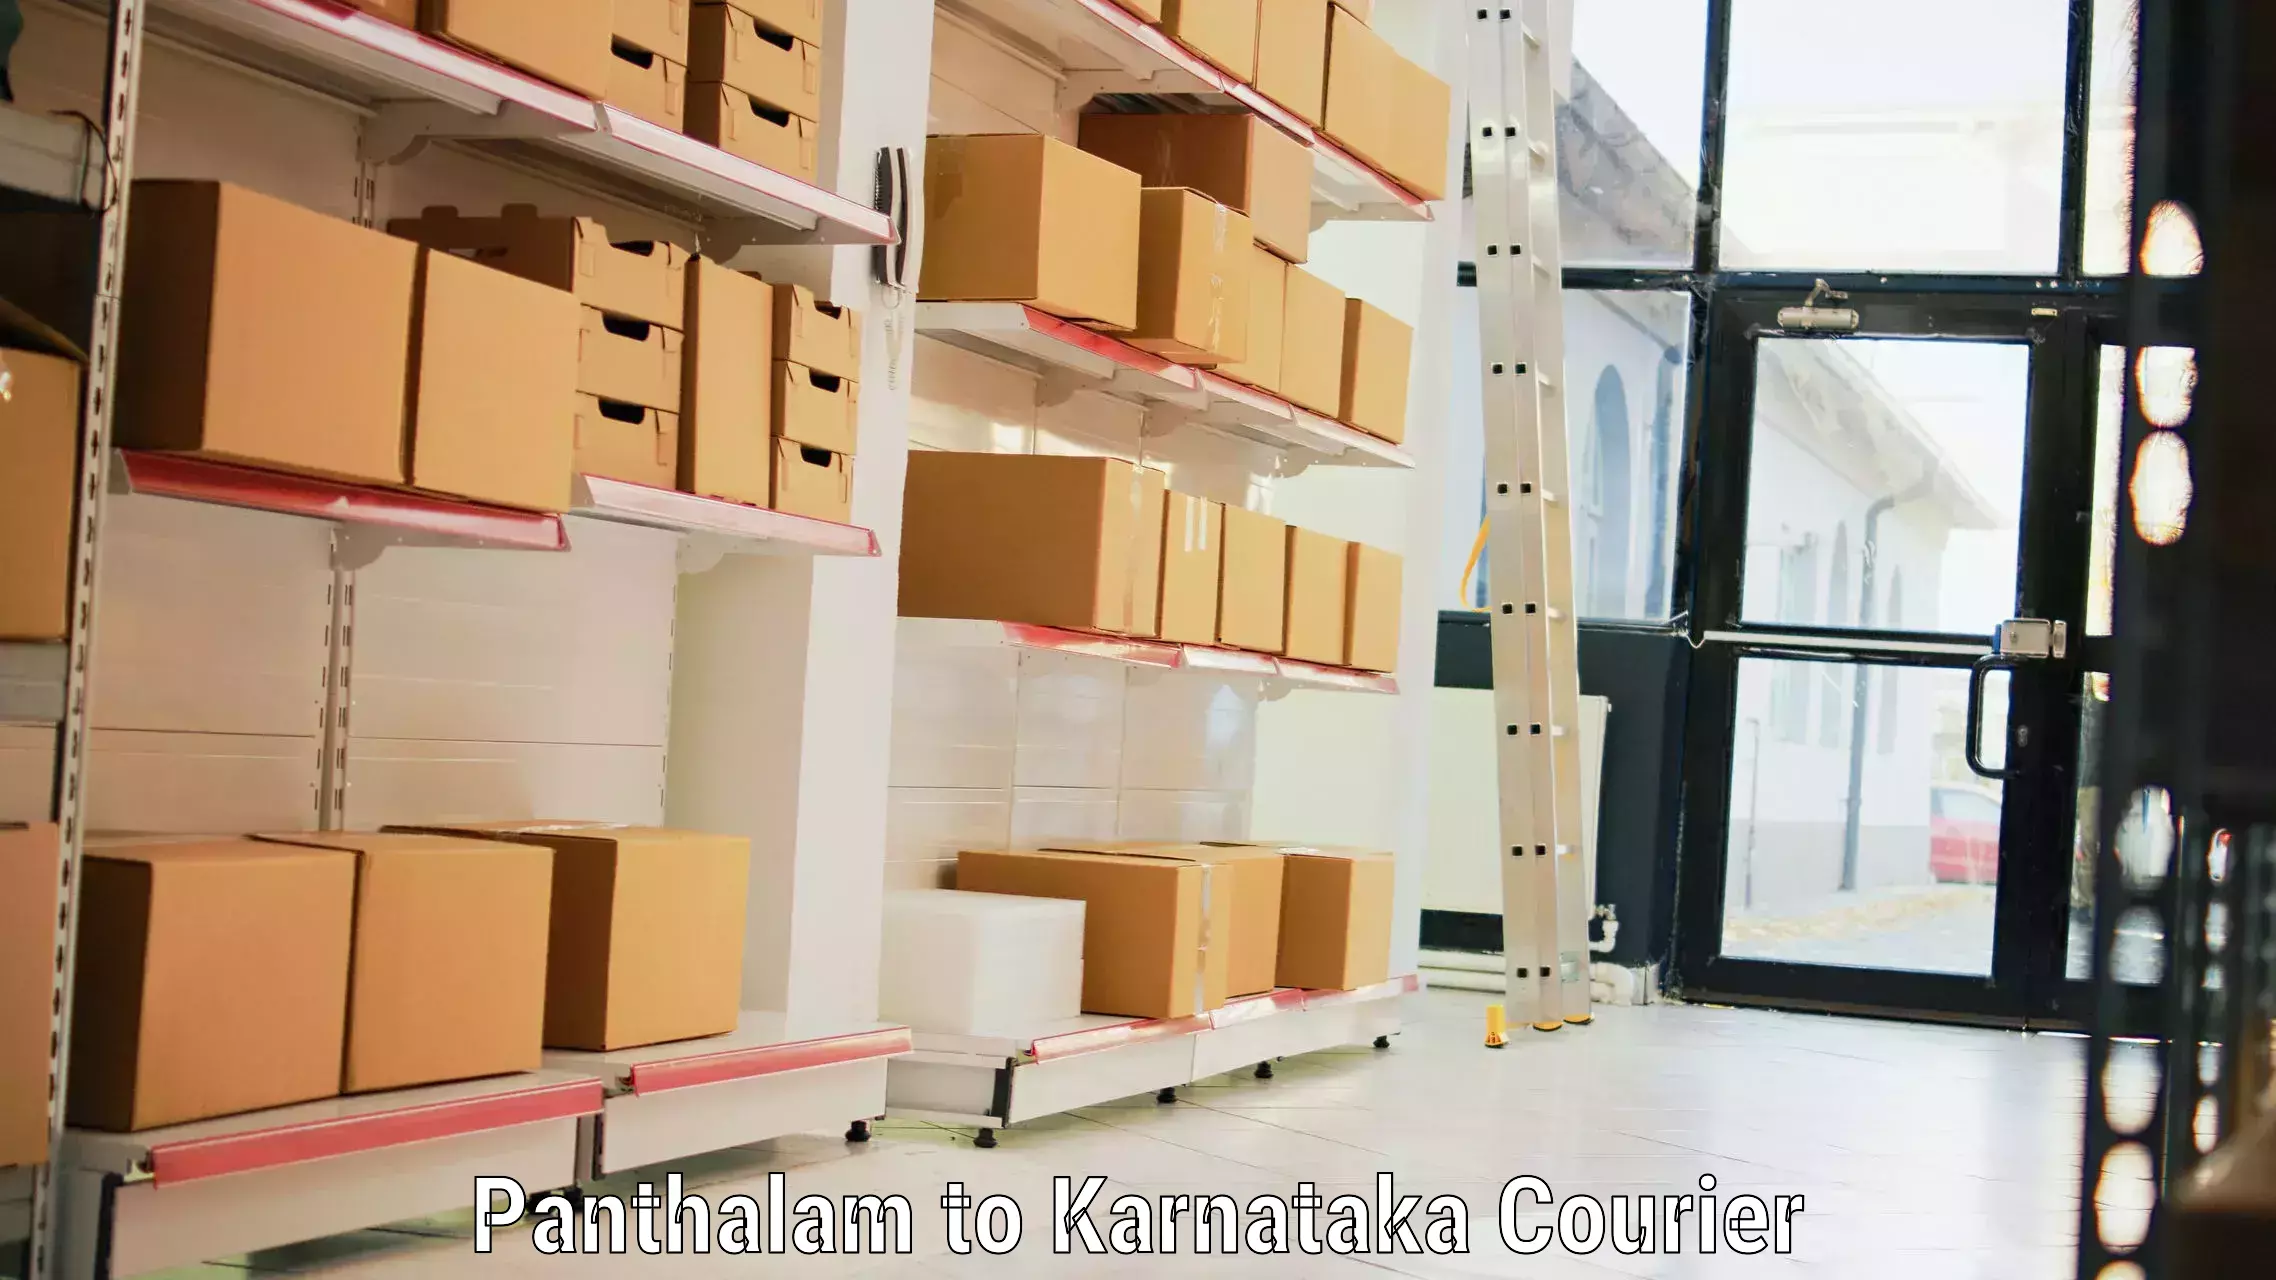 Baggage shipping optimization Panthalam to Karnataka